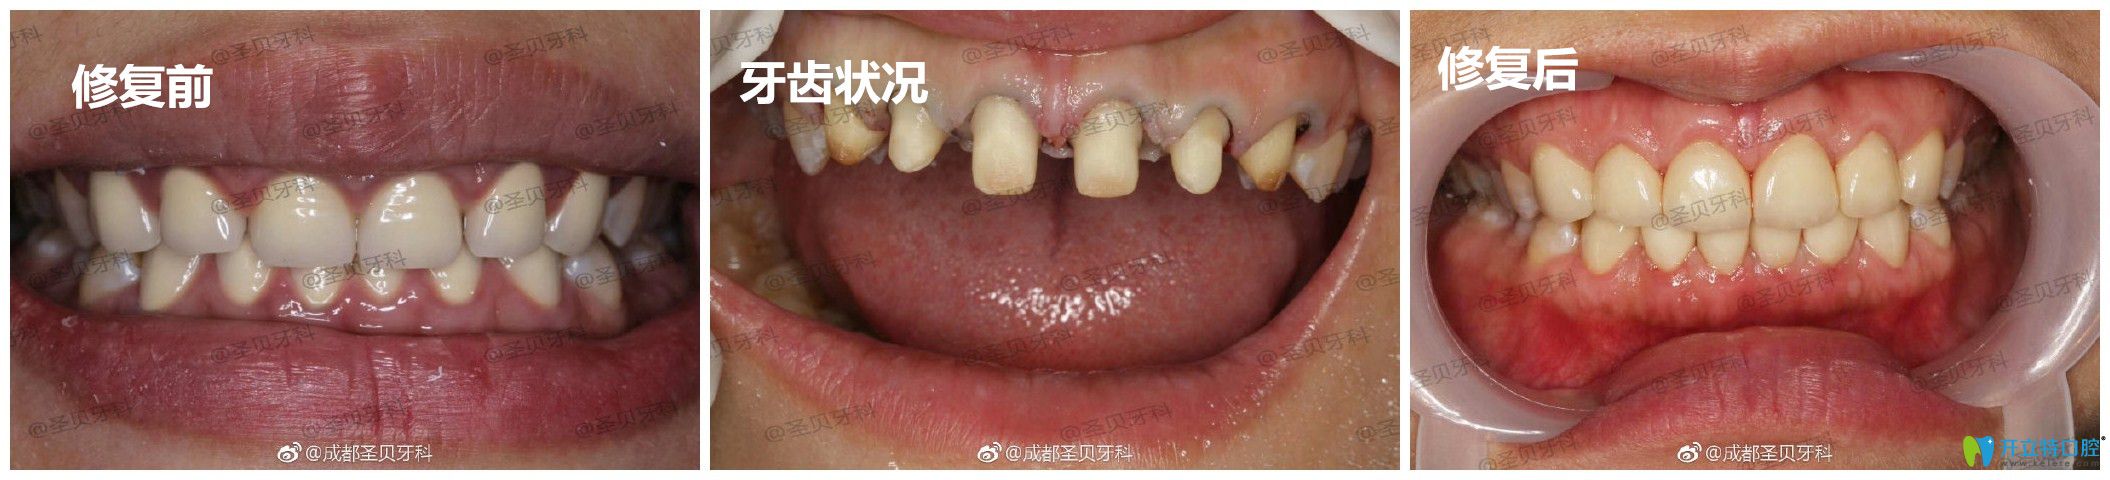 圣贝口腔牙齿修复案例